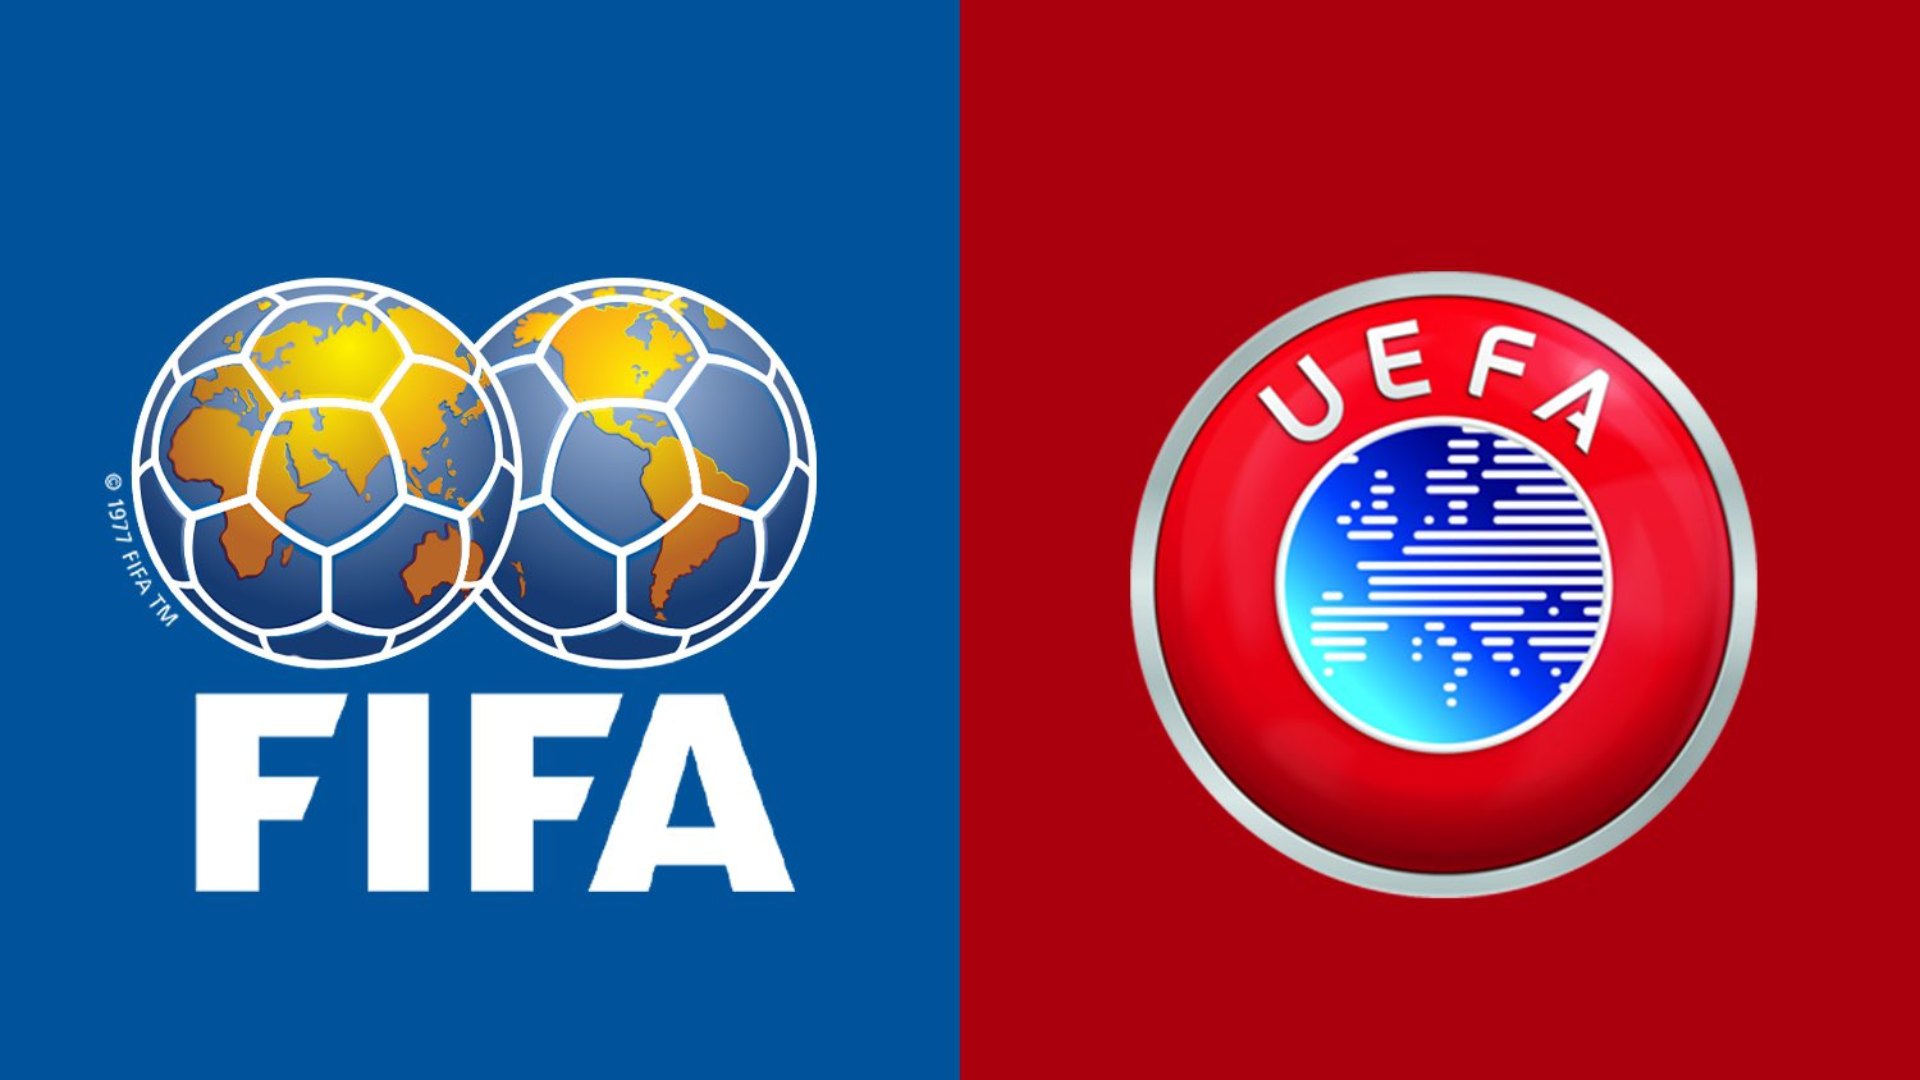 La justicia española estima que FIFA y UEFA "han abusado de su posición de dominio" al oponerse a la Superliga, proyecto de competición semi-cerrada.